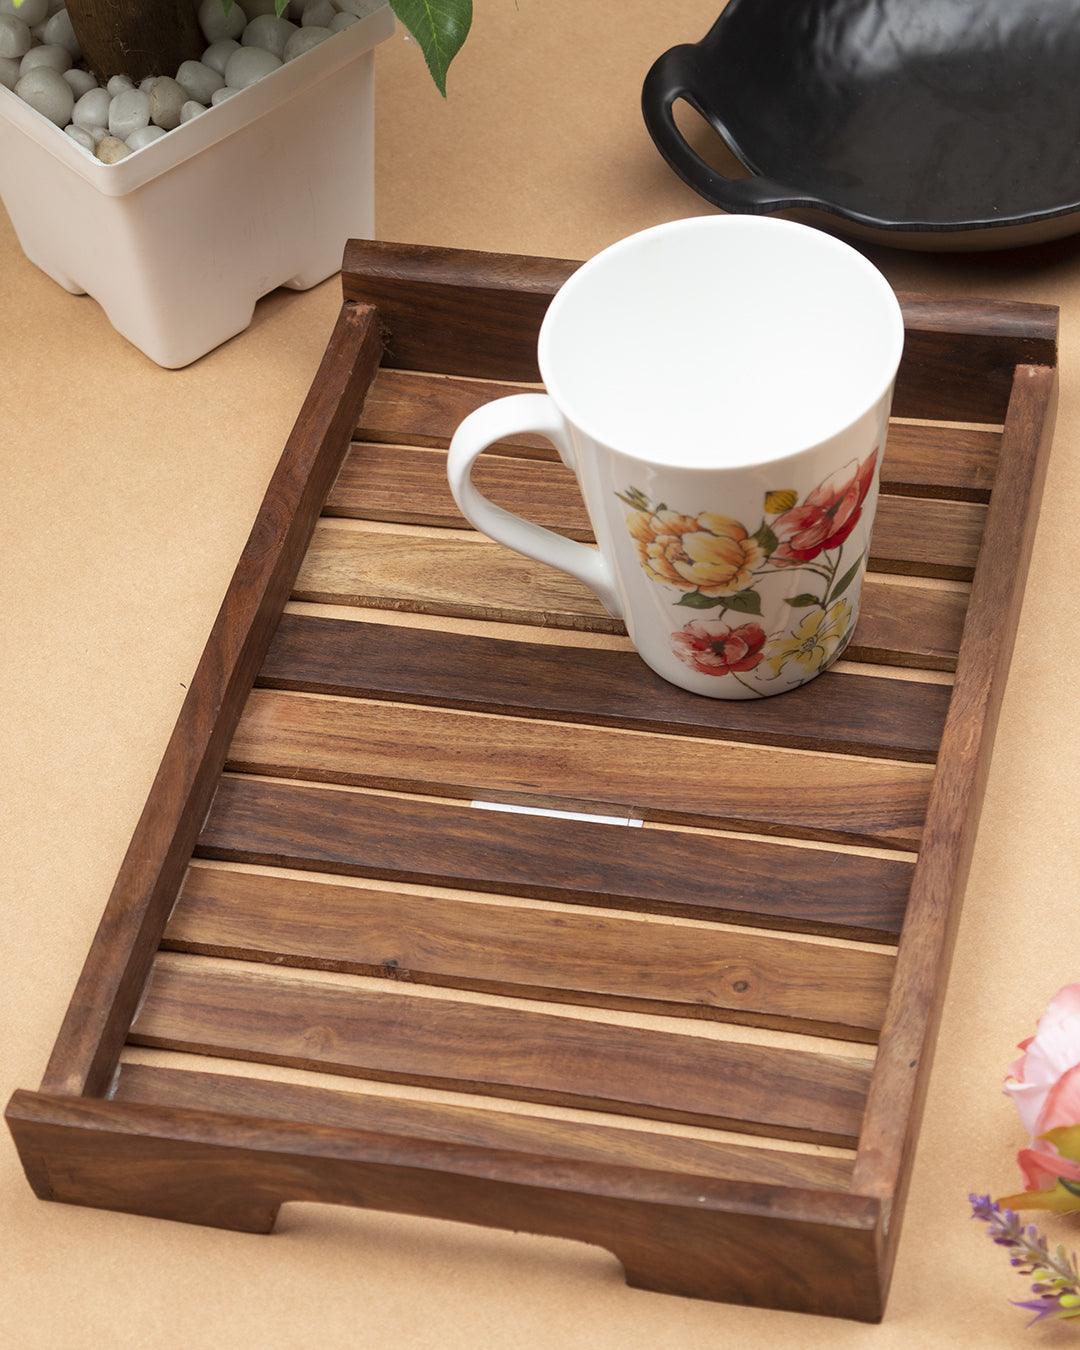 http://market99.com/cdn/shop/files/sheesham-wood-handcrafted-medium-serving-trays-serving-trays-1.jpg?v=1697015443